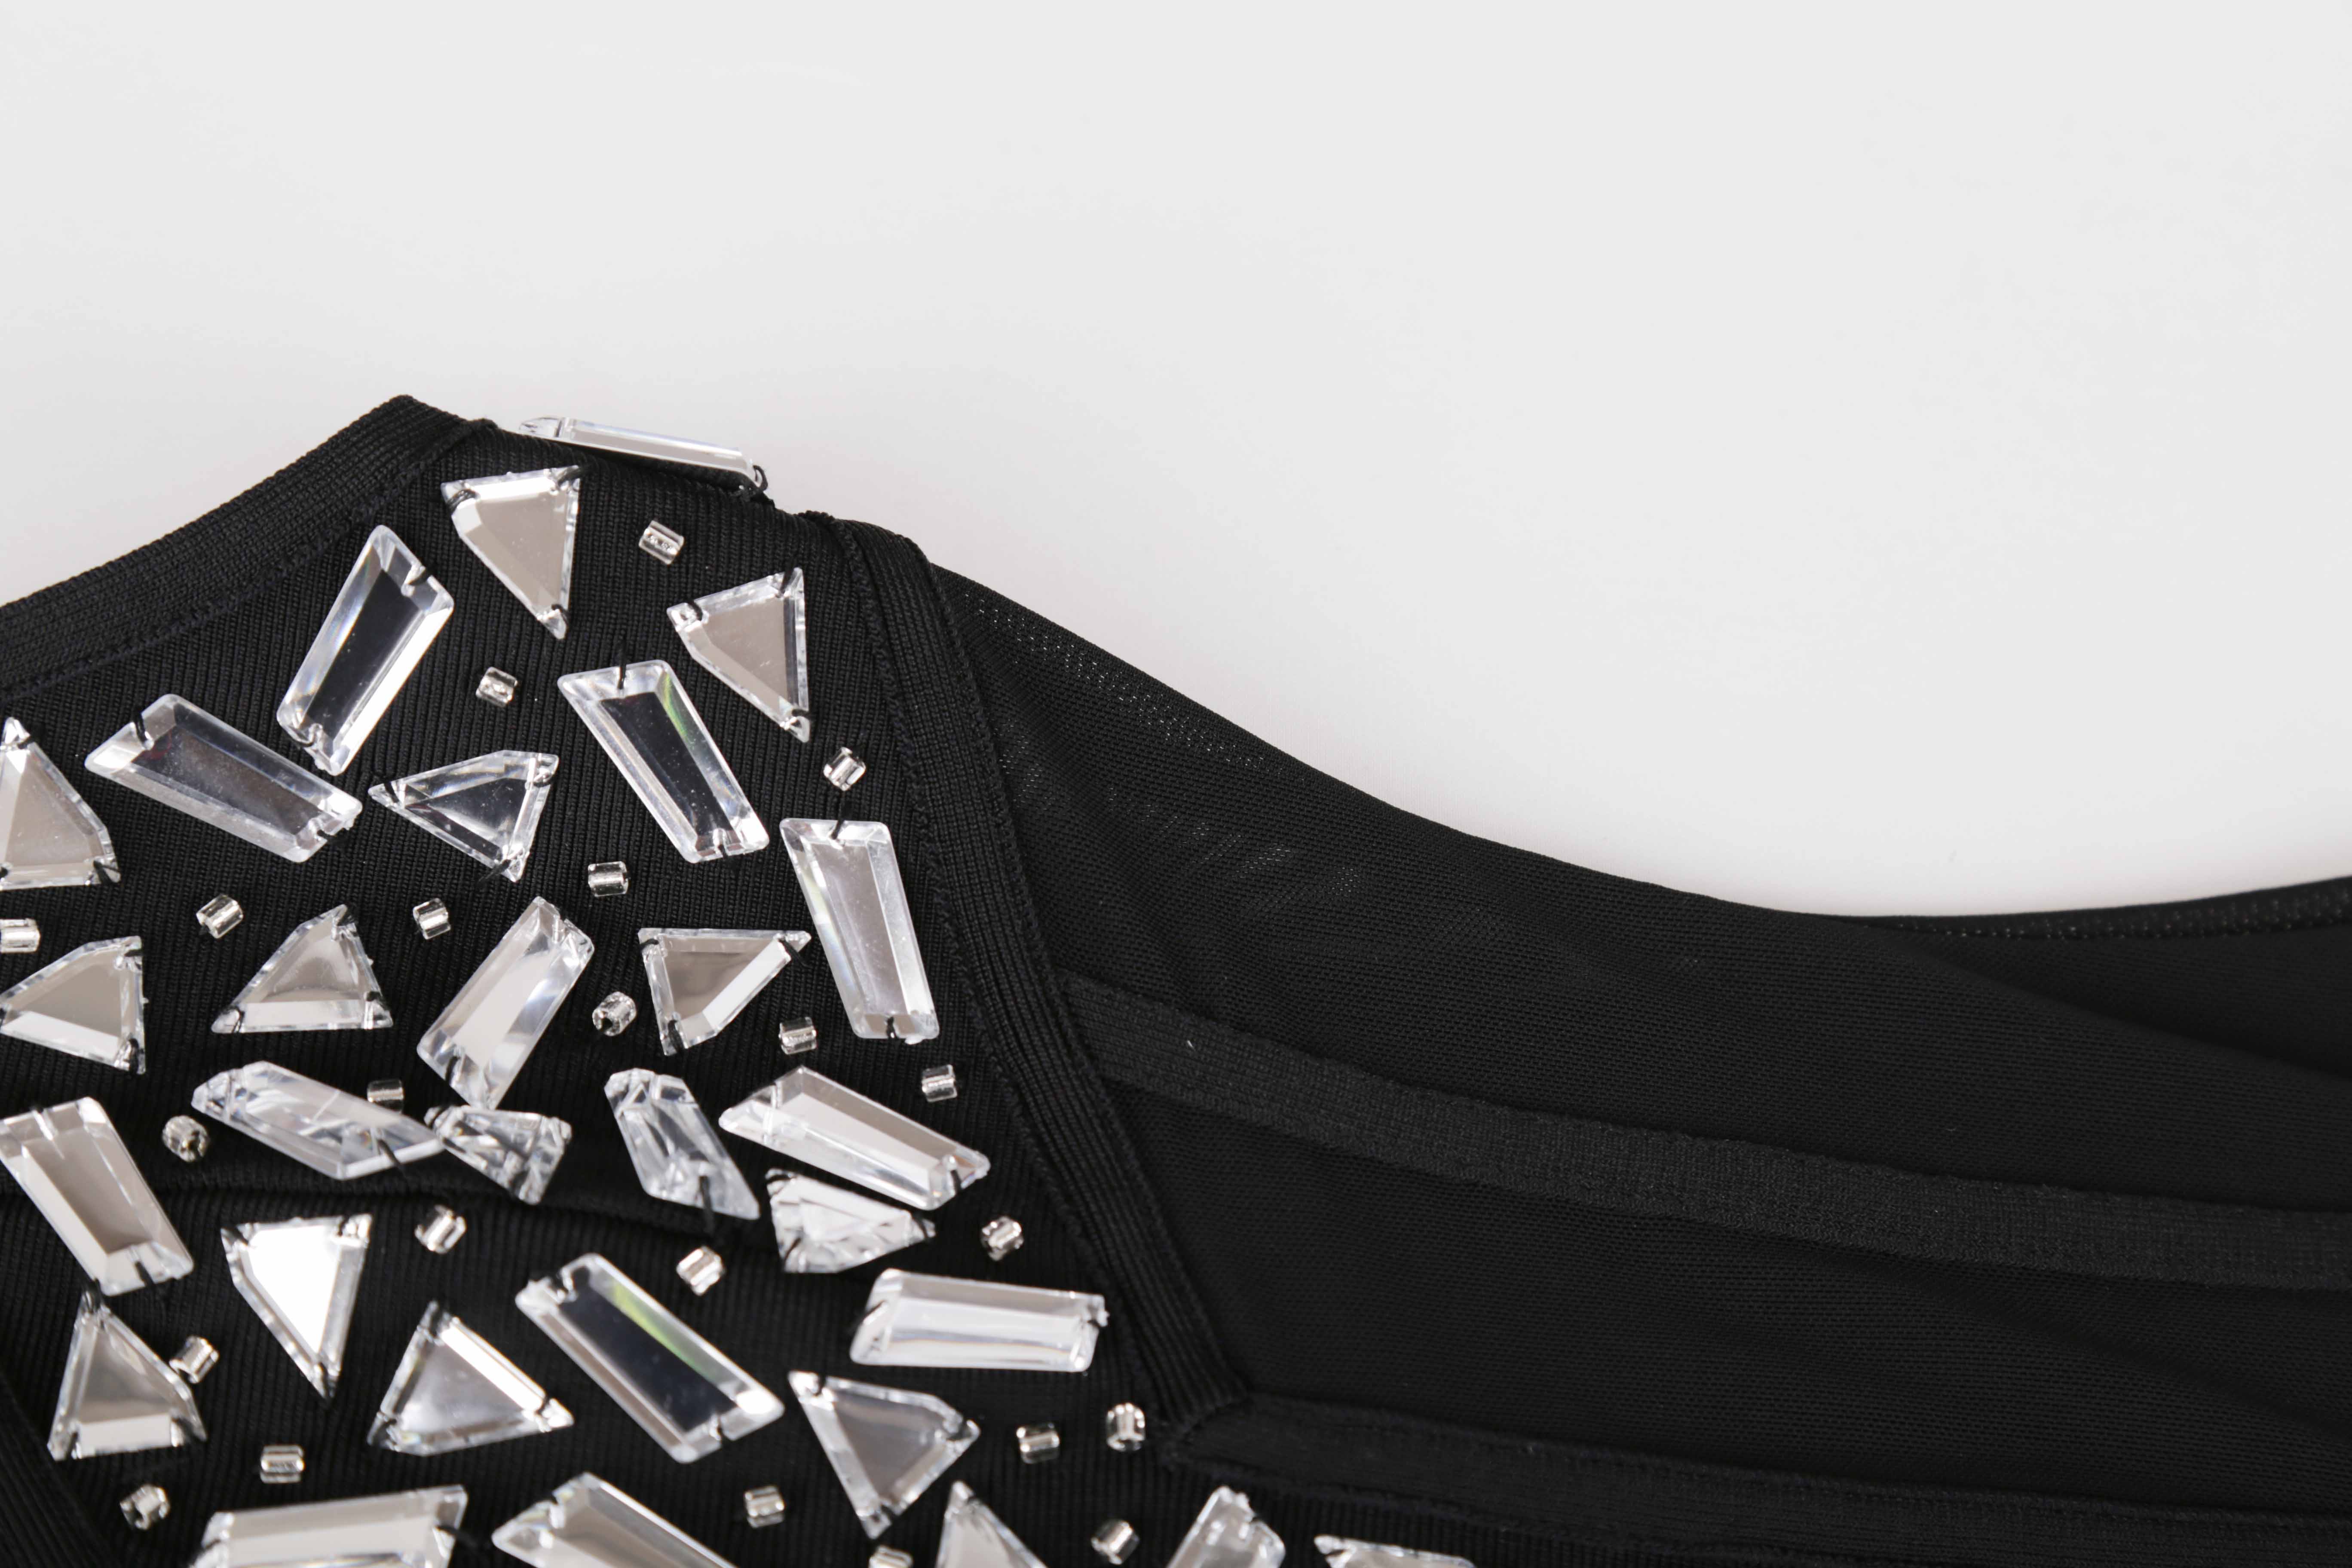 black sleeveless mesh studded new sexy bandage bodysuits 